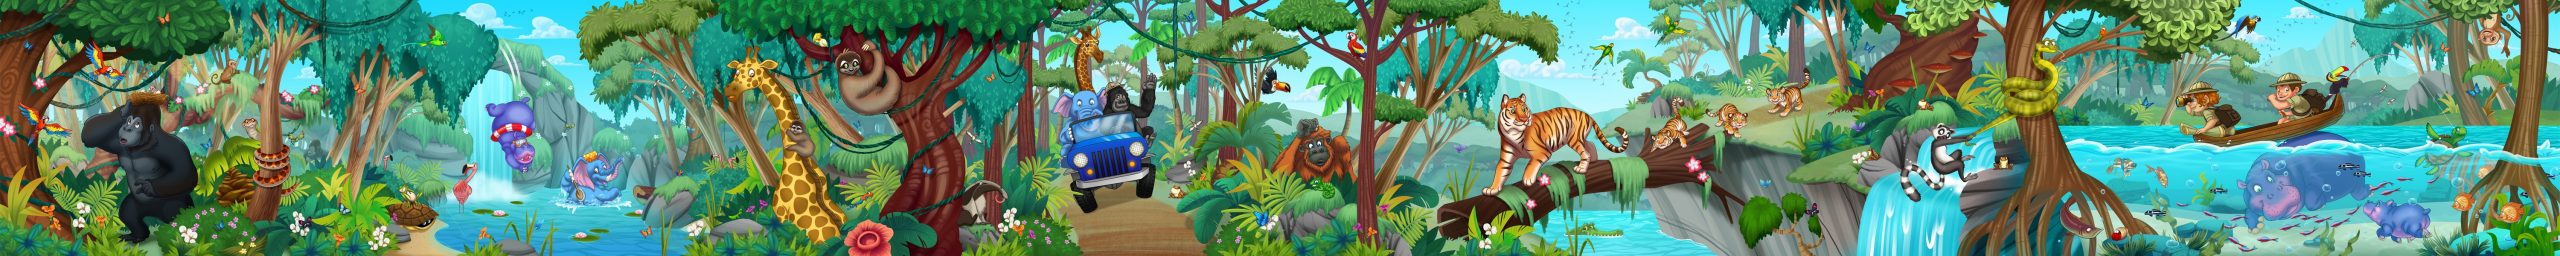 KidsMural-Jungle1